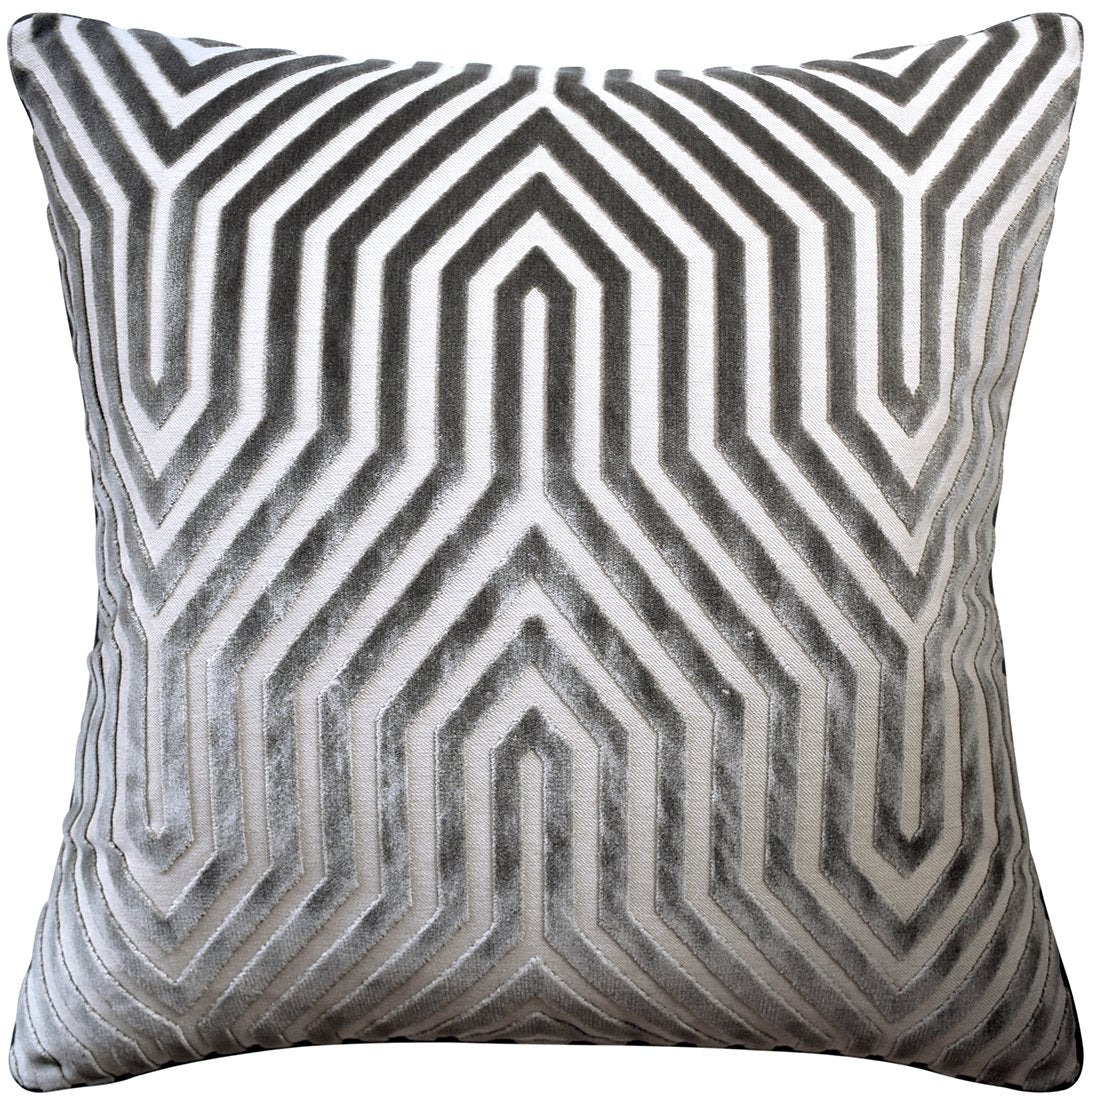 Vanderbilt Dove Velvet Pillow | Shop Ryan Studio Pillows at Fig Linens